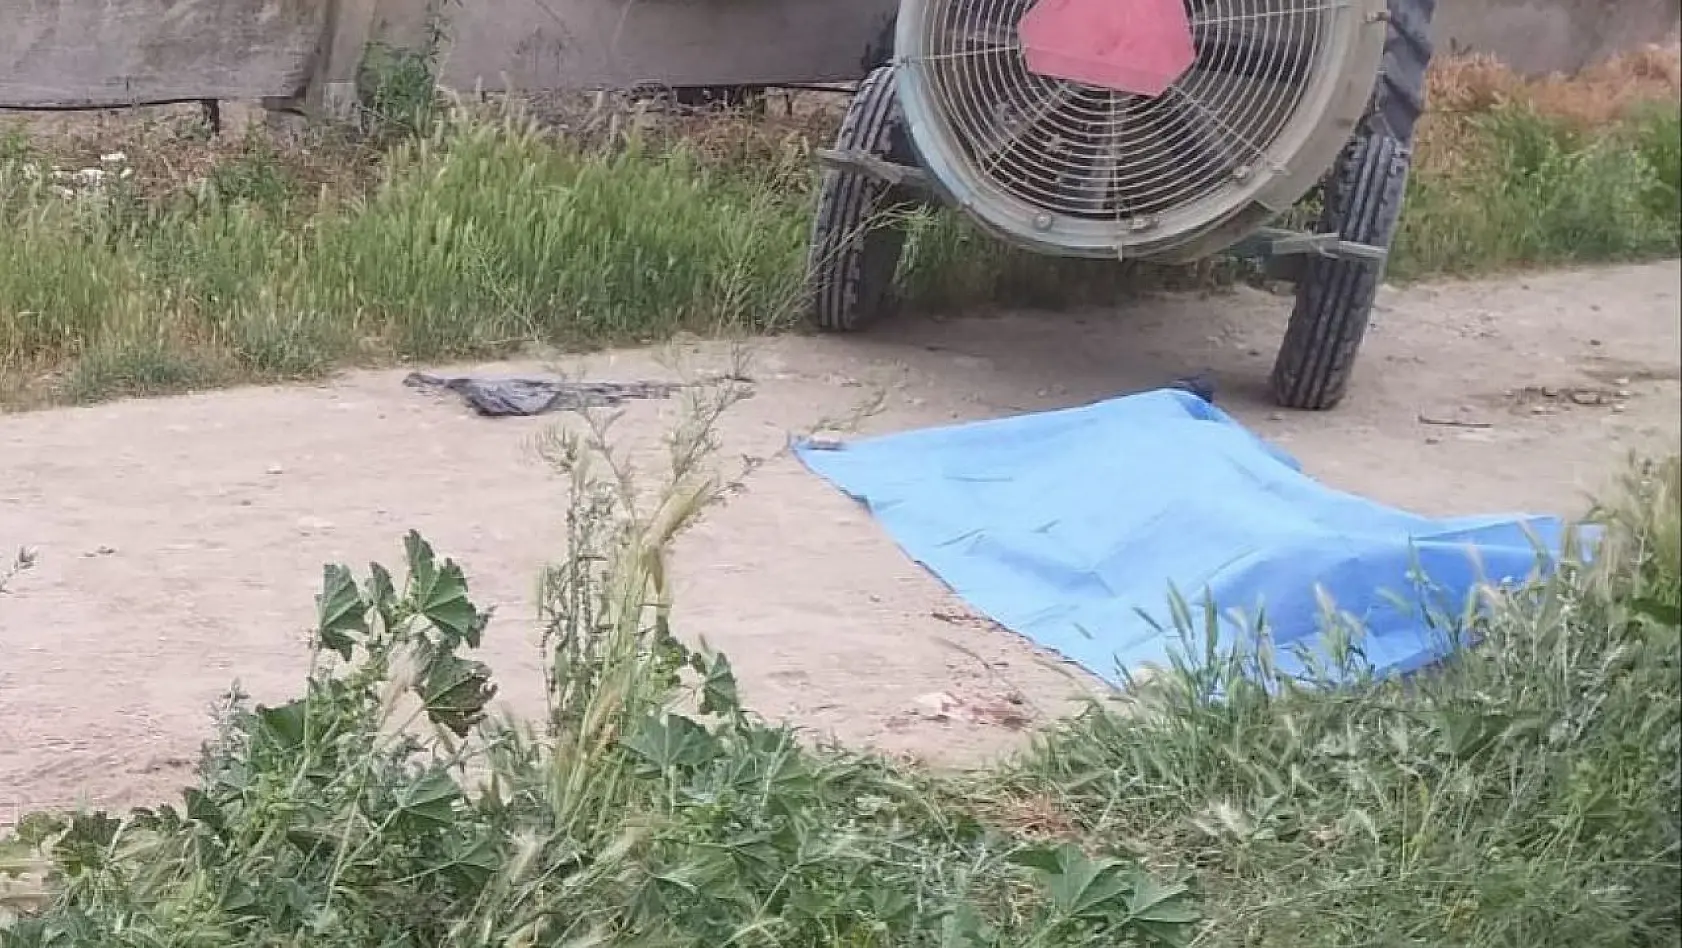 Manisa'da bir kişi traktörün yanında ölü olarak bulundu